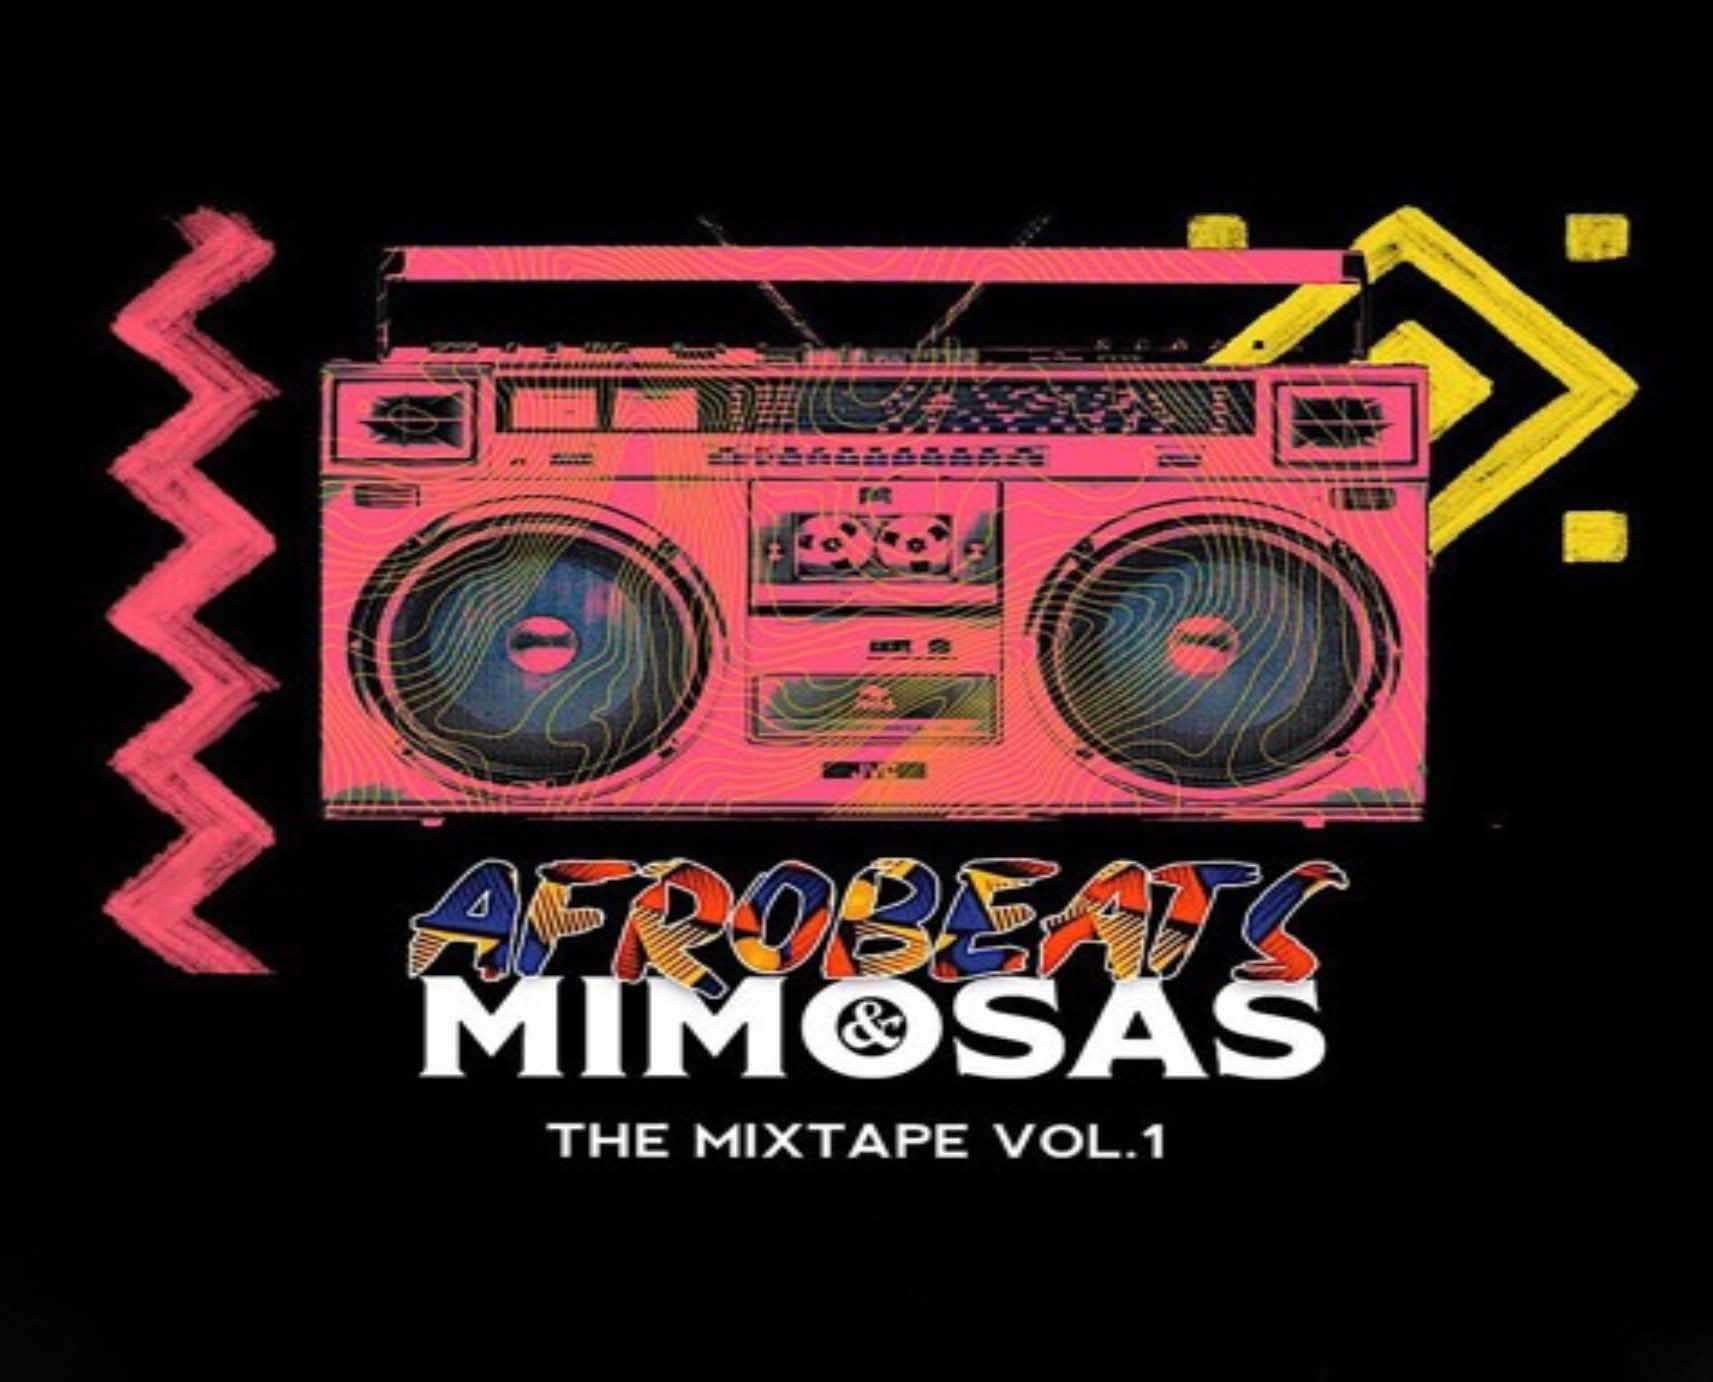 Afrobeats & Mimosas